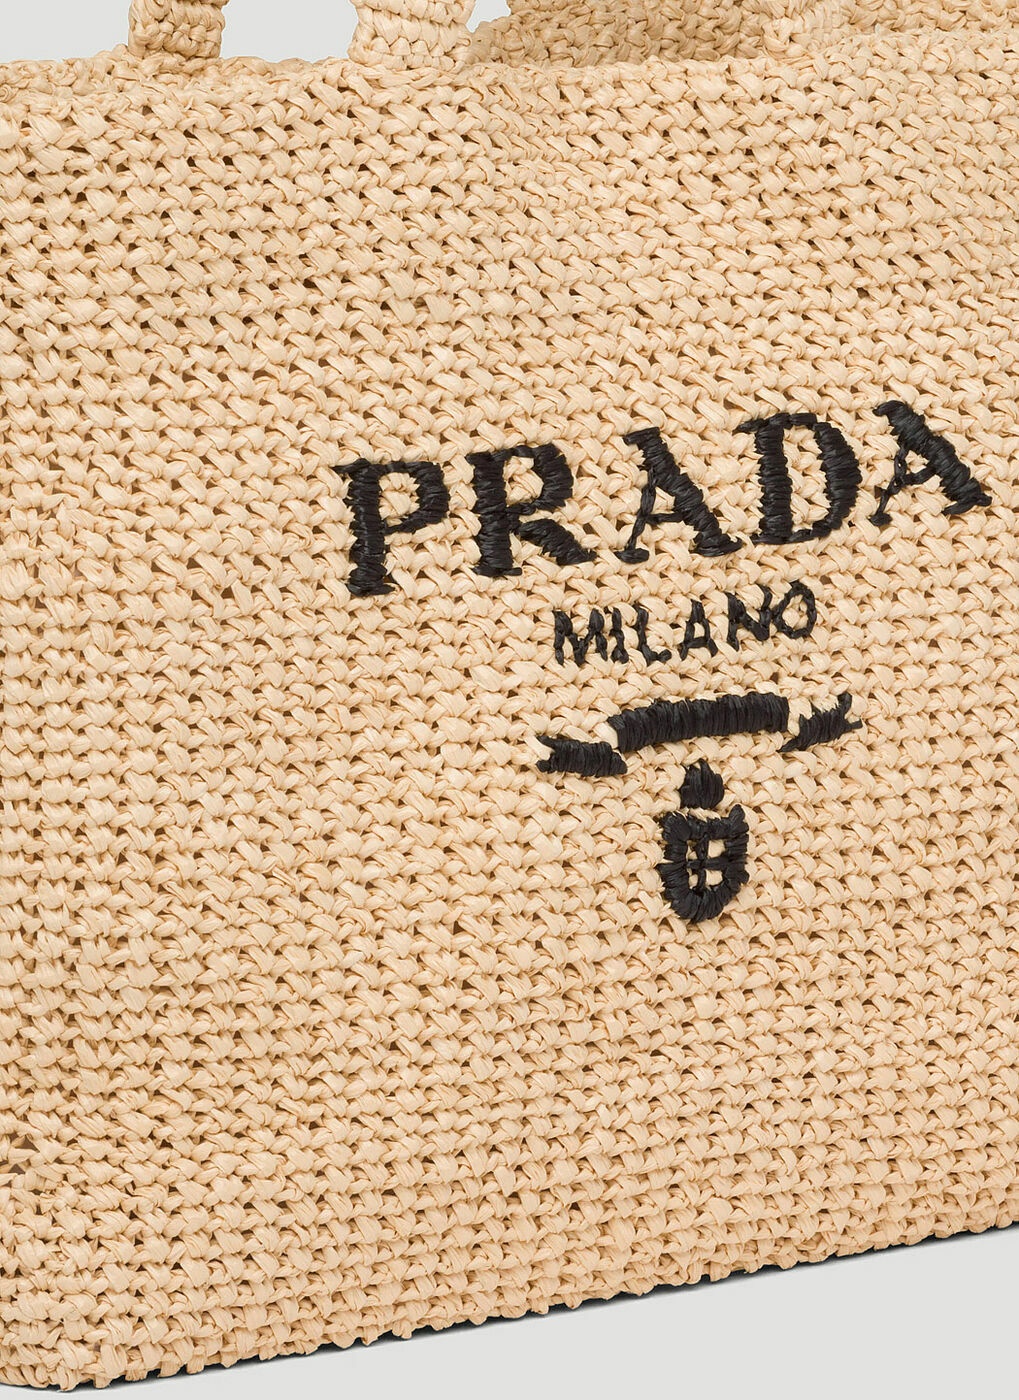 Prada - Raffia Tote Bag in Beige Prada